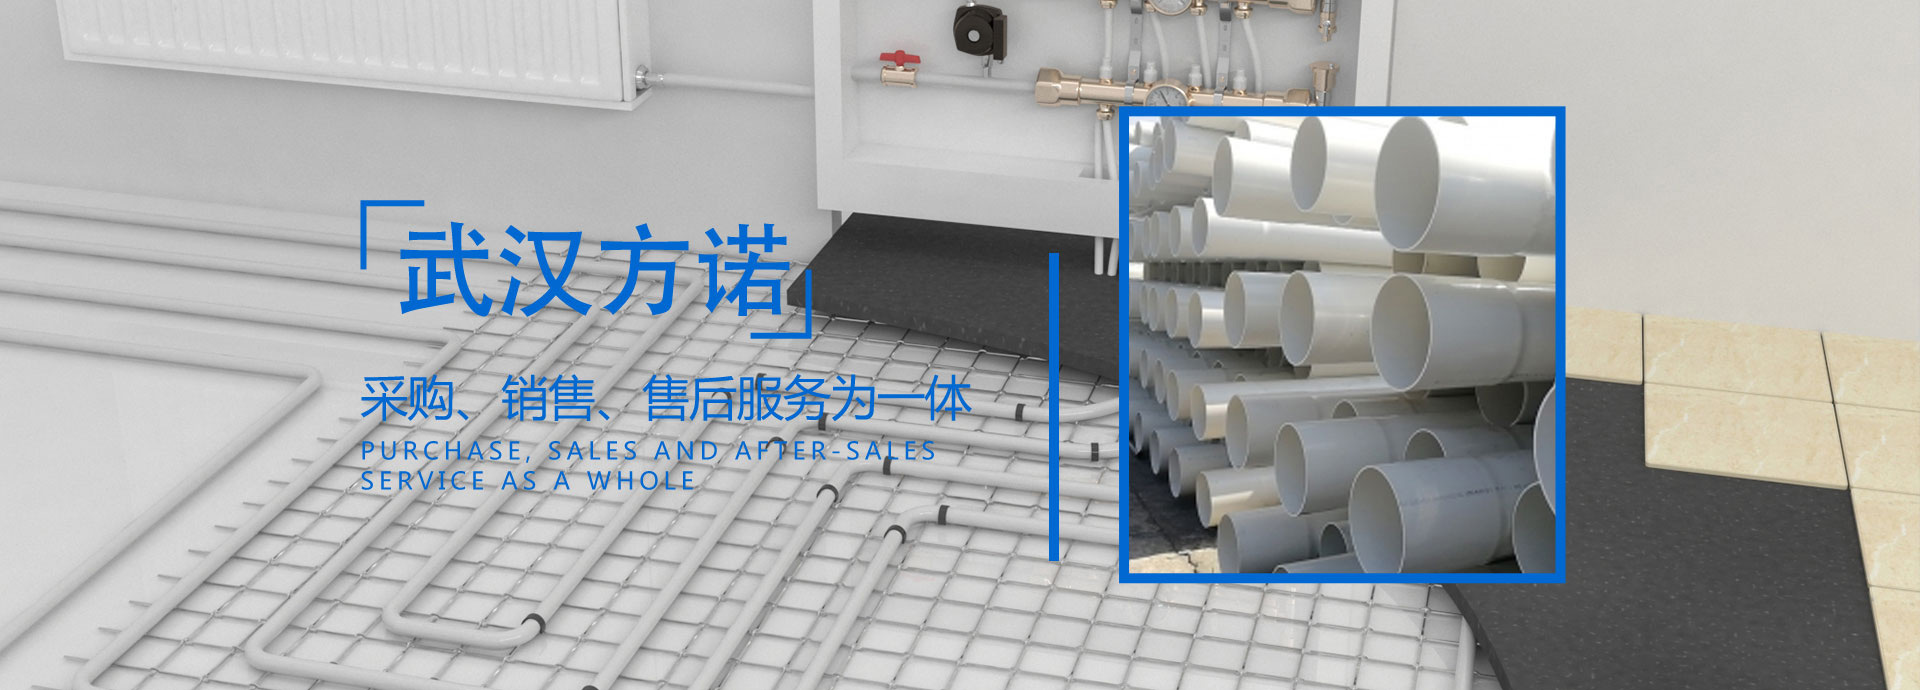 武漢方諾工程塑膠管道有限公司